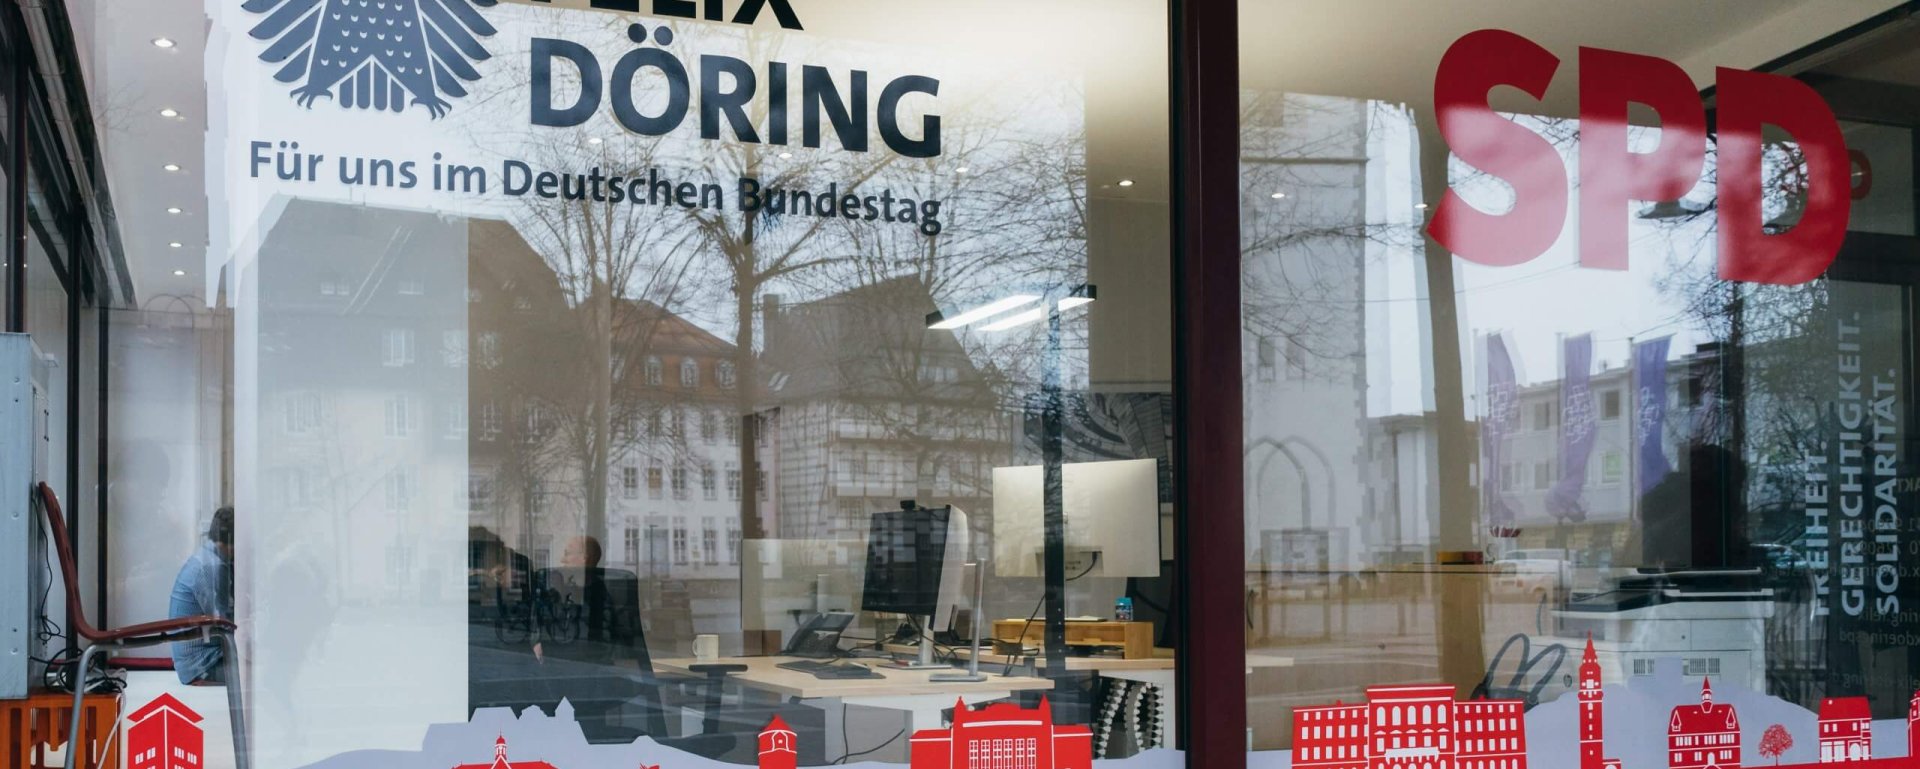 Felix Döring MdB eröffent sein Bürgerbüro am Lindenplatz in der Gießener Innenstadt am Freitag dem 24. Februar 2023. Fotografiert von Mathias Krämer.